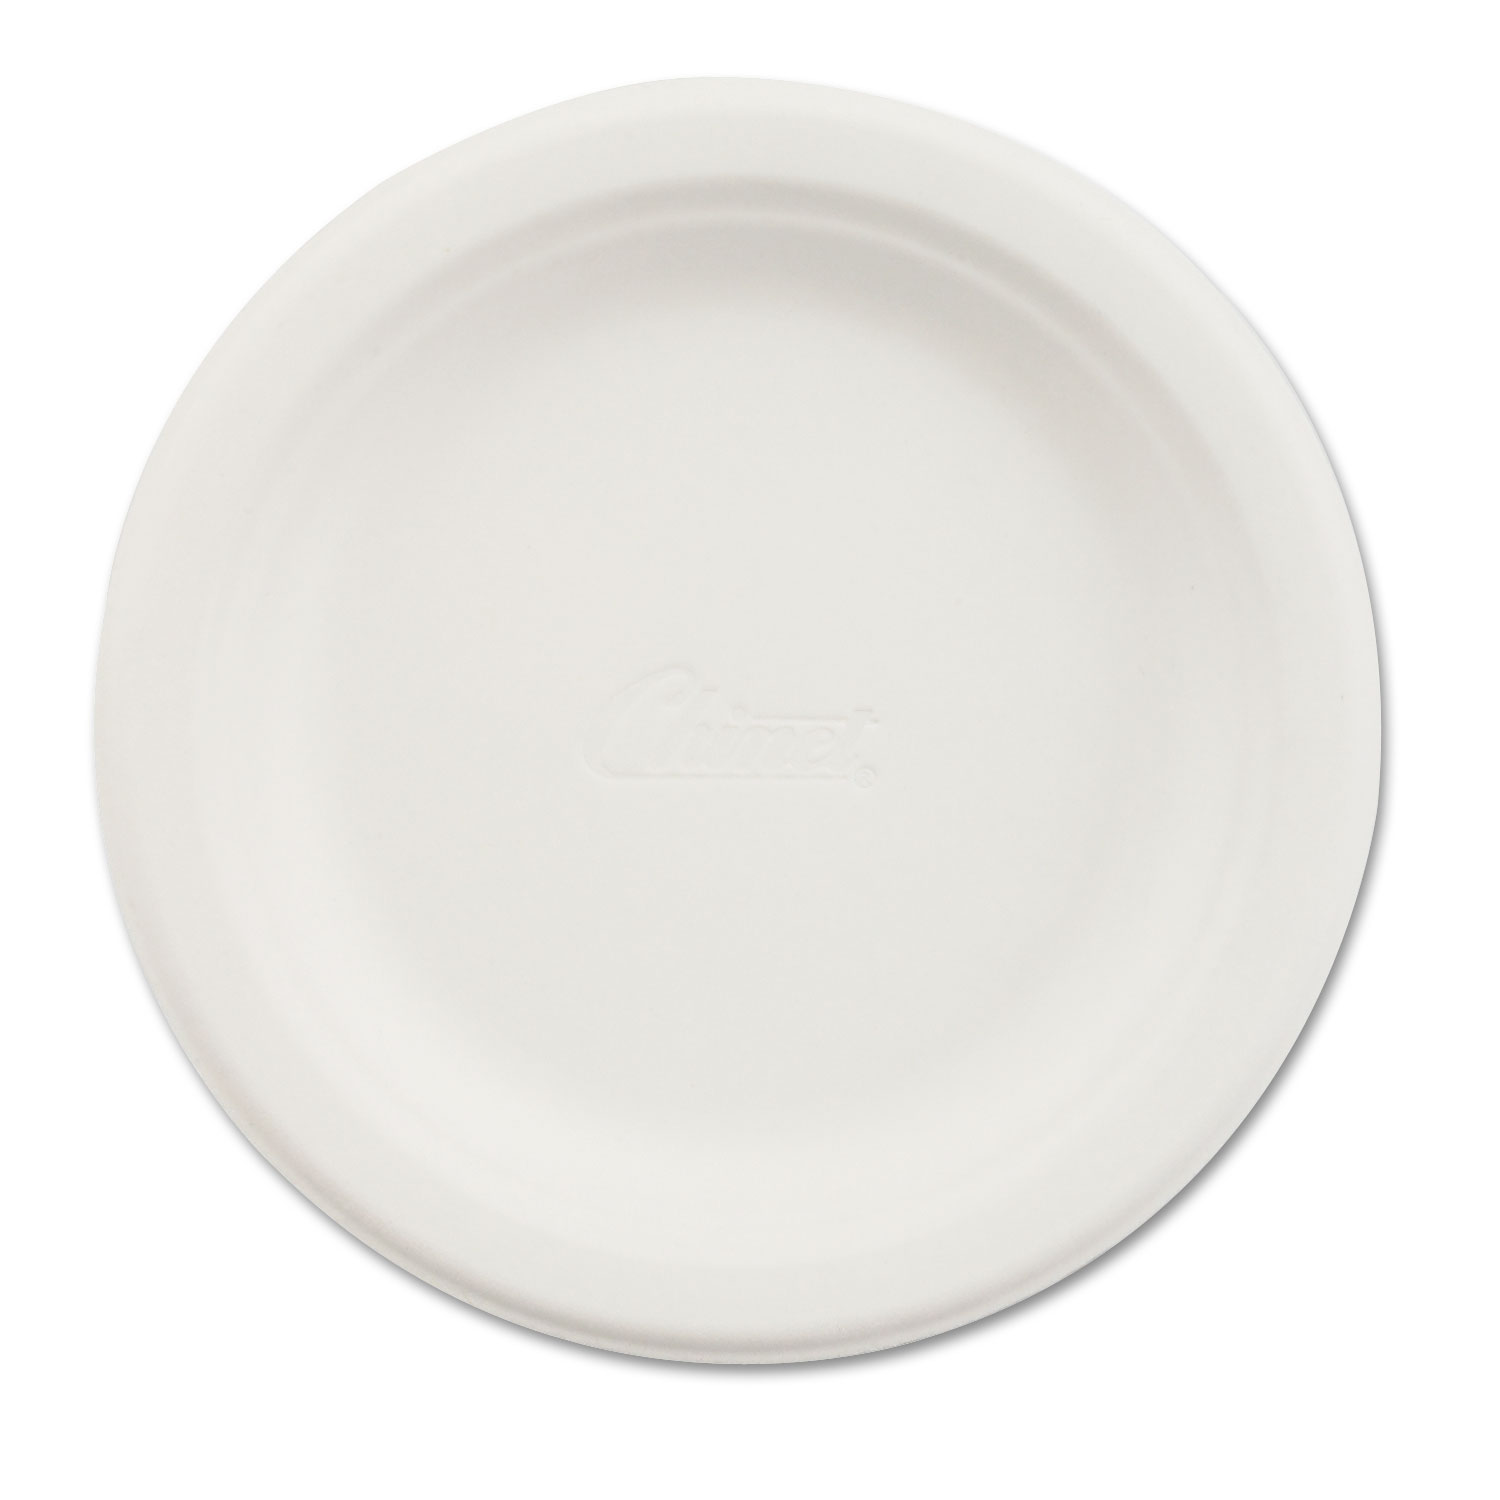  Chinet 21225 Paper Dinnerware, Plate, 6 dia, White, 1000/Carton (HUH21225) 